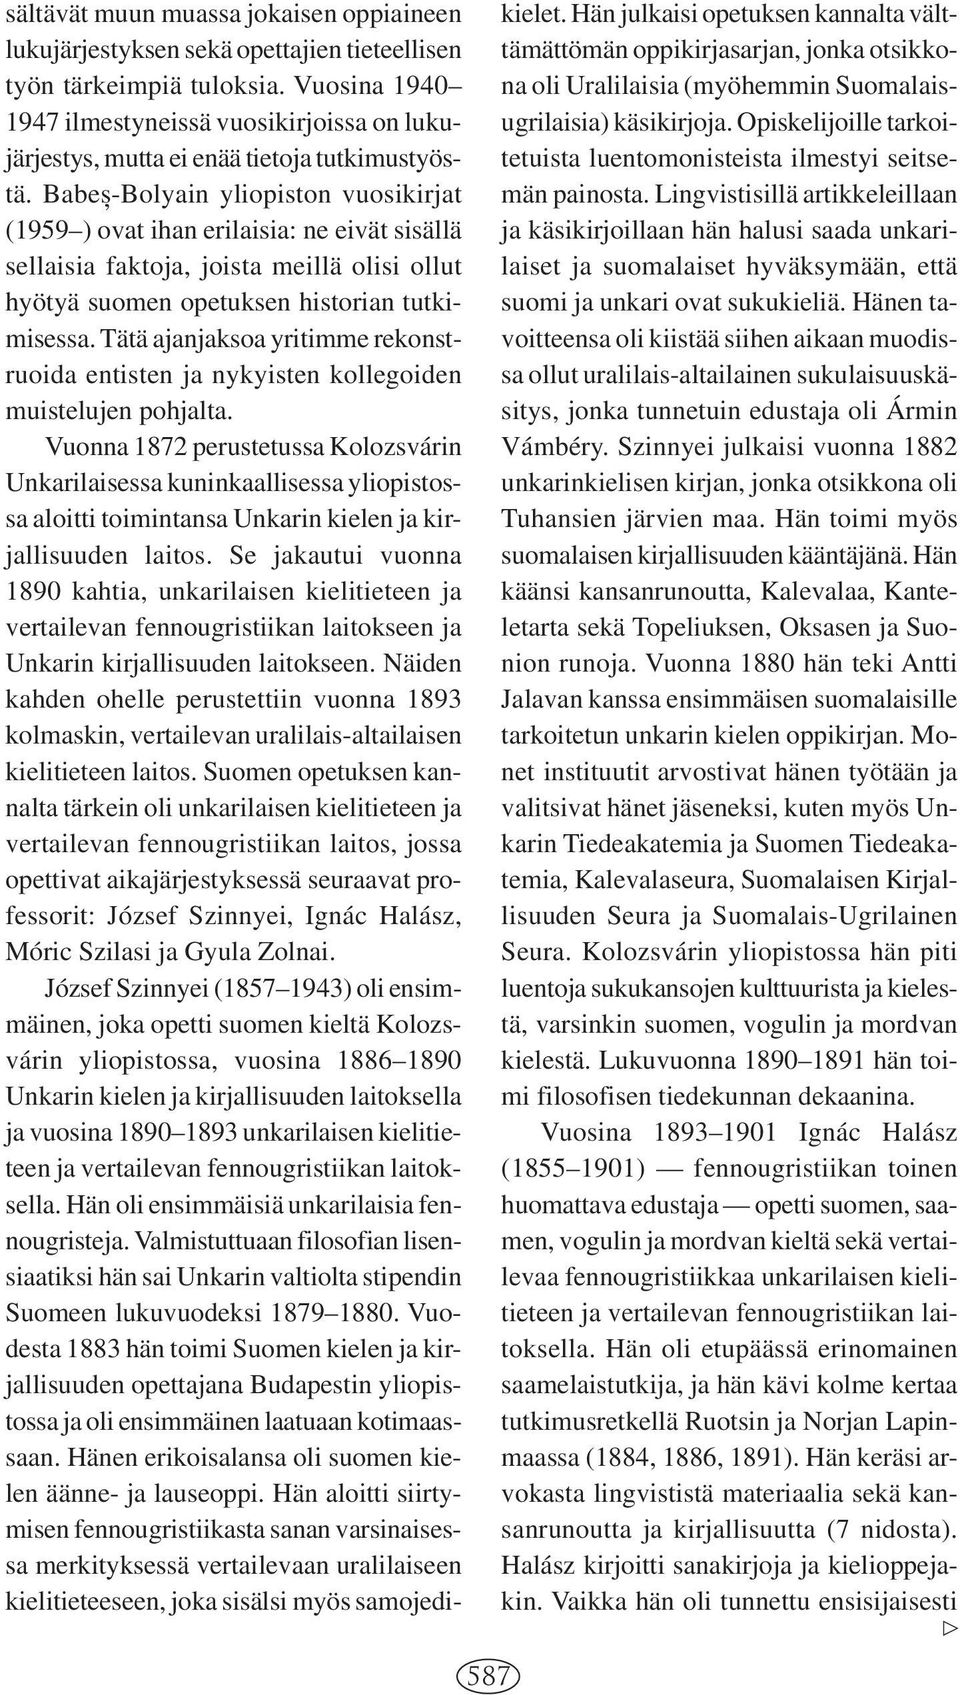 Babe,s-Bolyain yliopiston vuosikirjat (1959 ) ovat ihan erilaisia: ne eivät sisällä sellaisia faktoja, joista meillä olisi ollut hyötyä suomen opetuksen historian tutkimisessa.